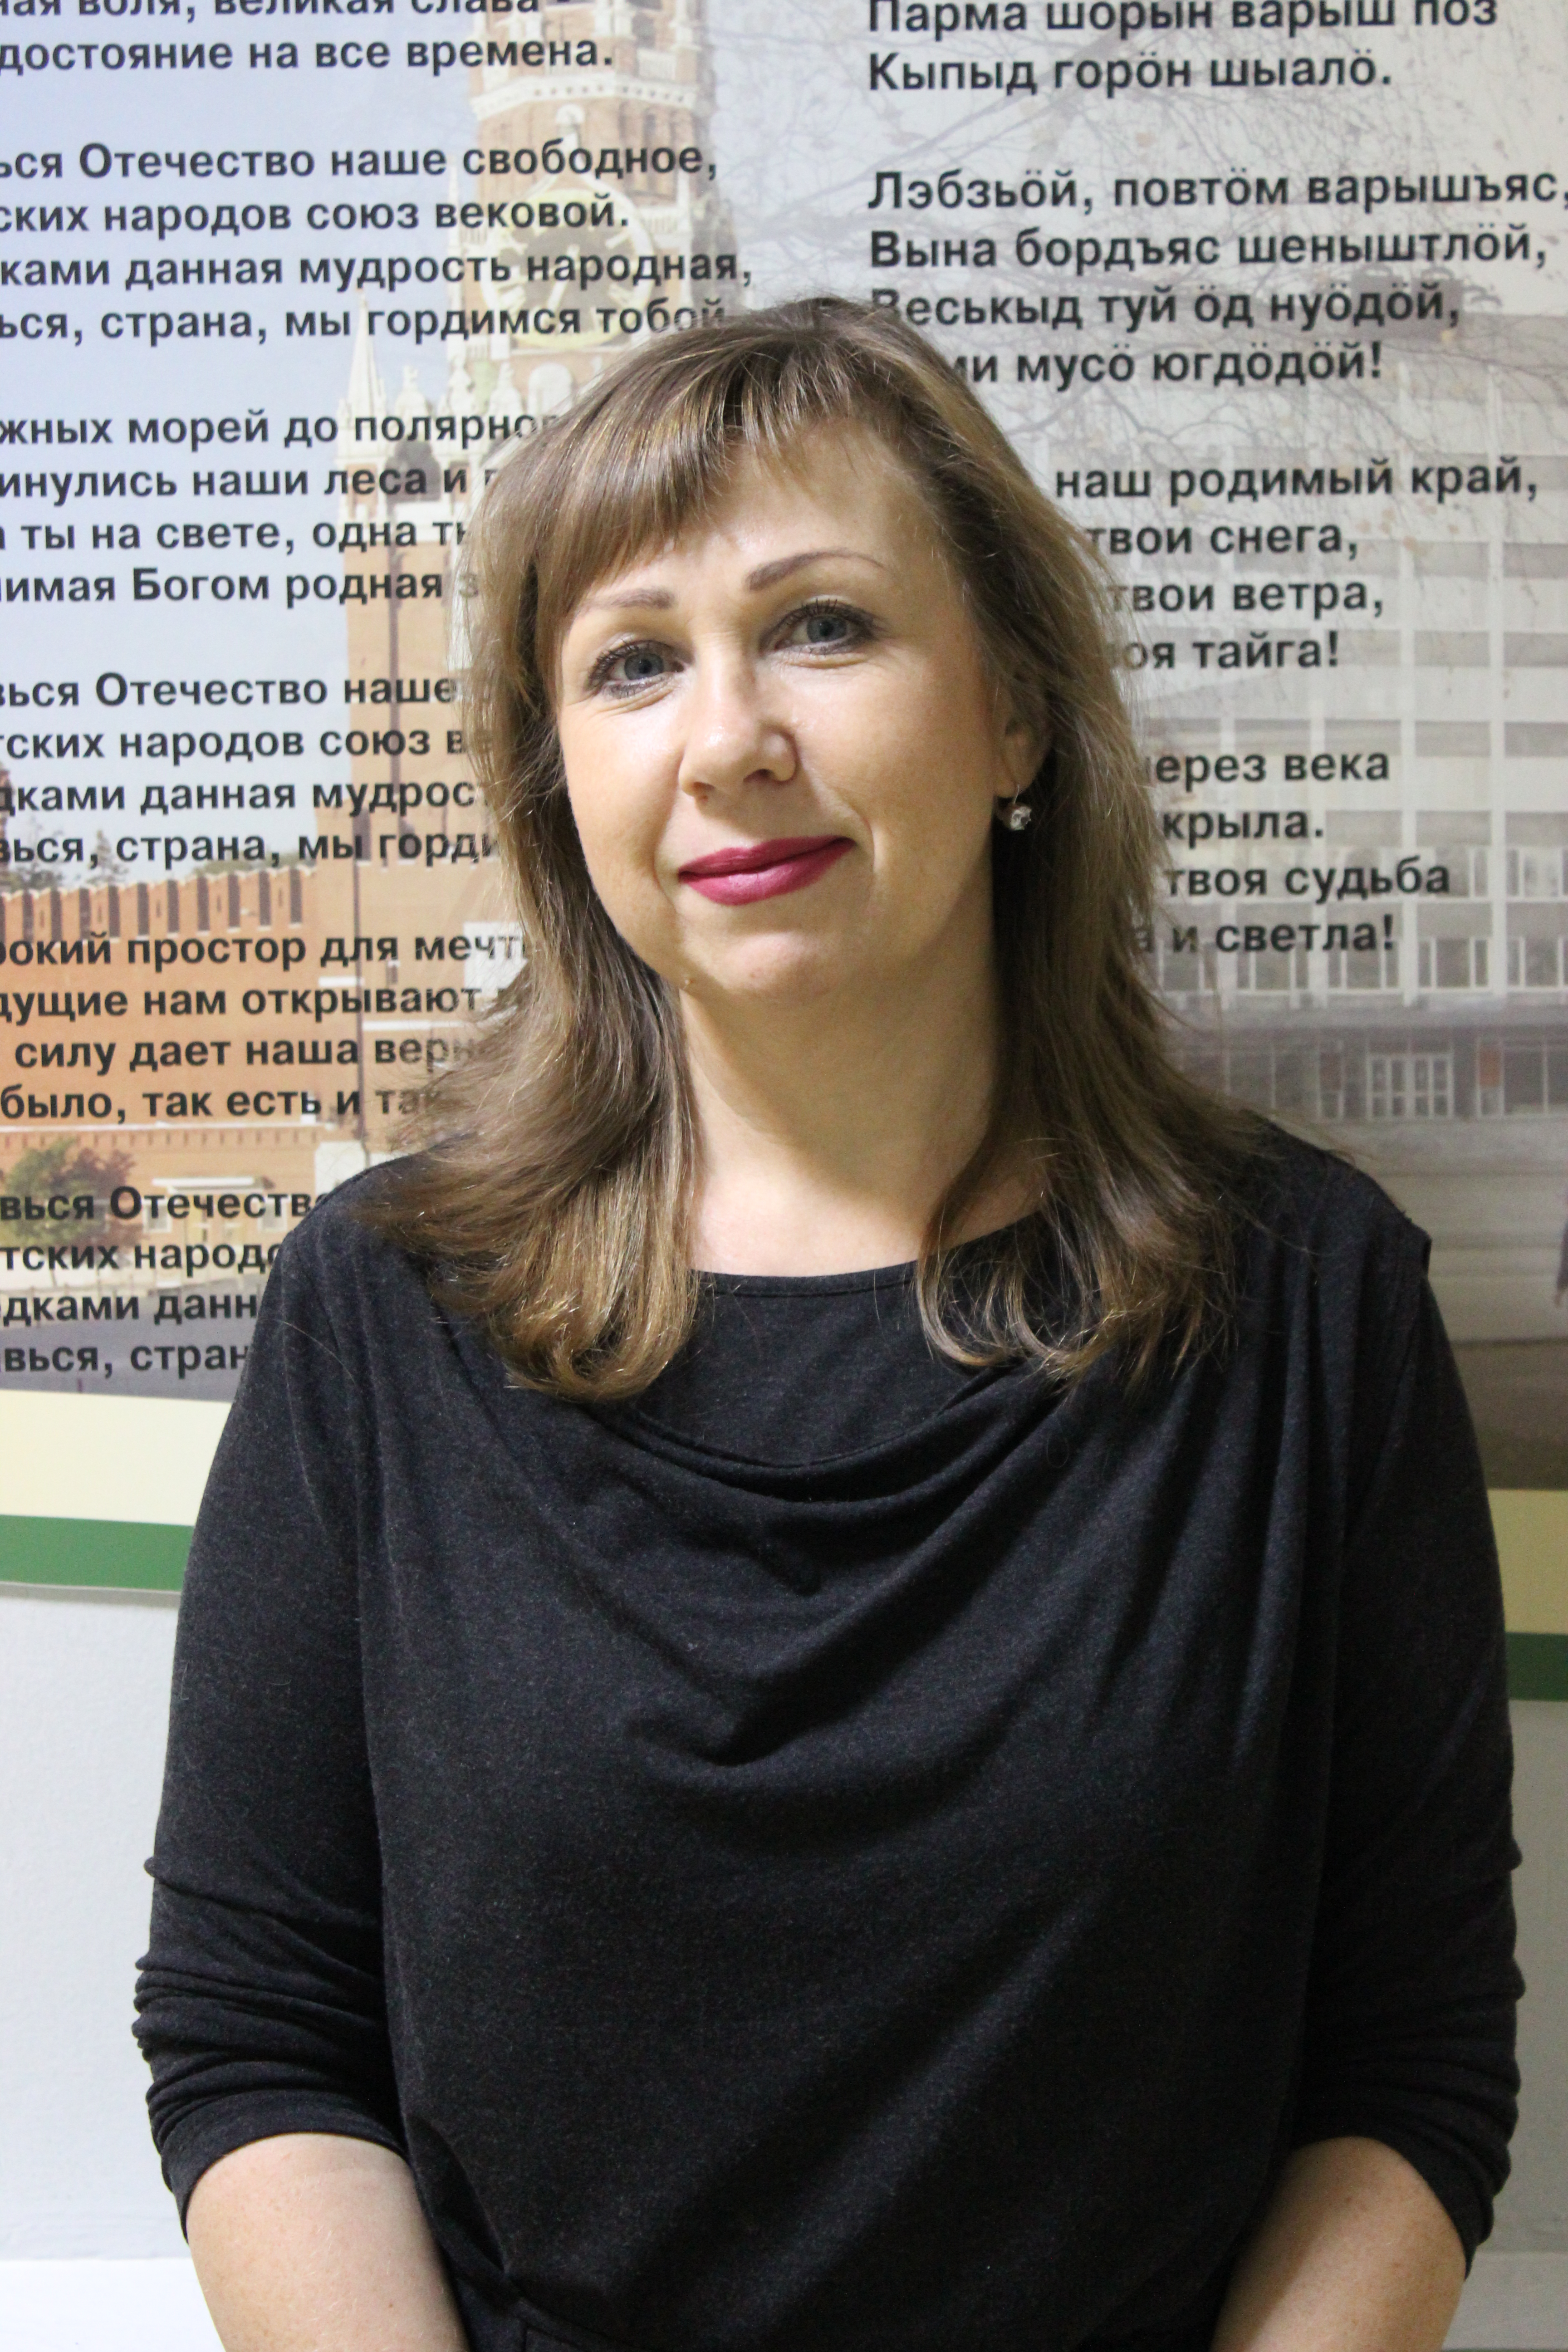 Носова Ирина Вениаминовна.